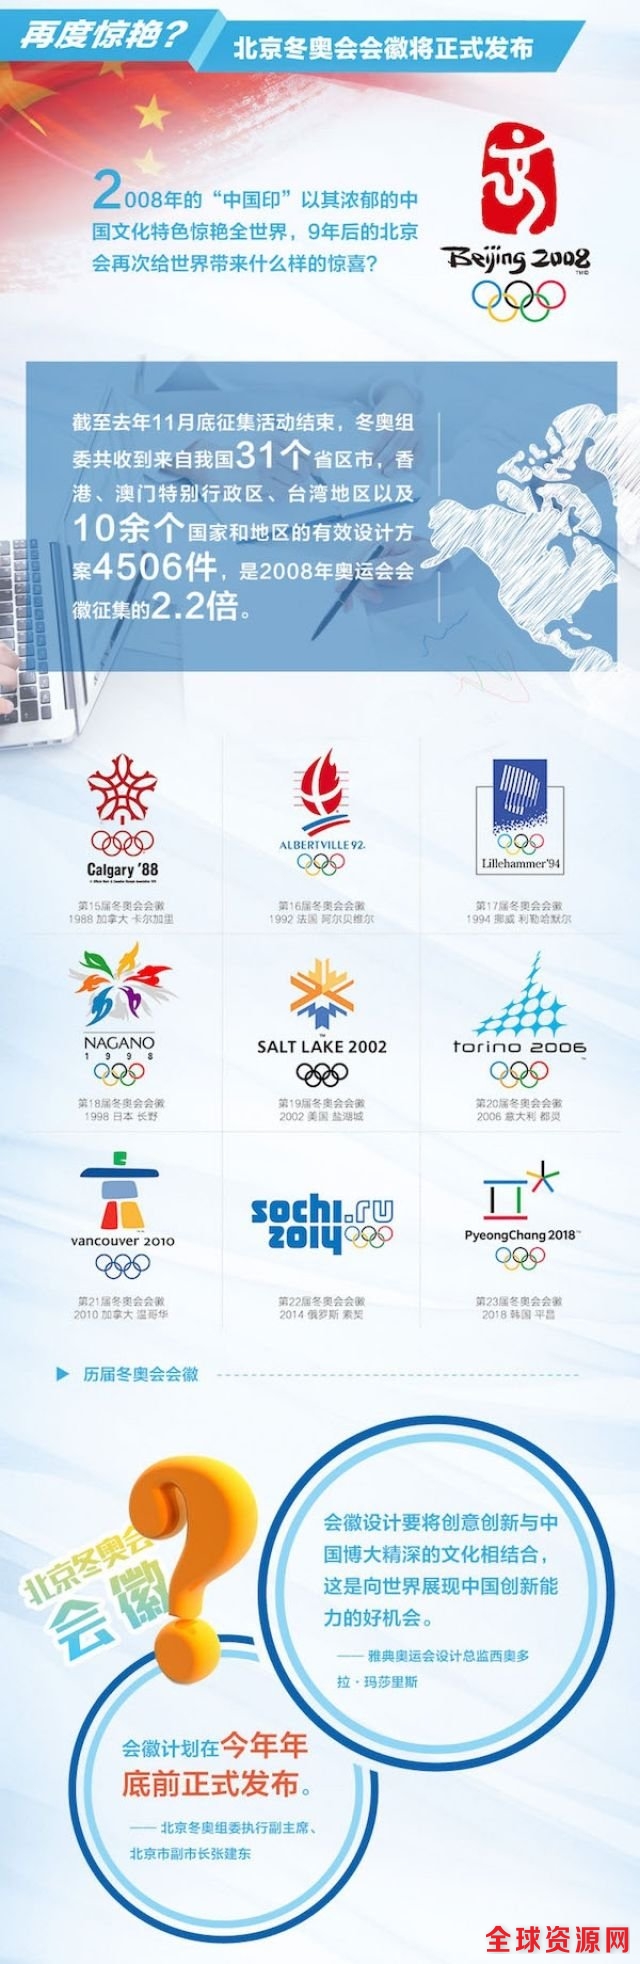 2022我们来了!北京冬奥会筹办步入